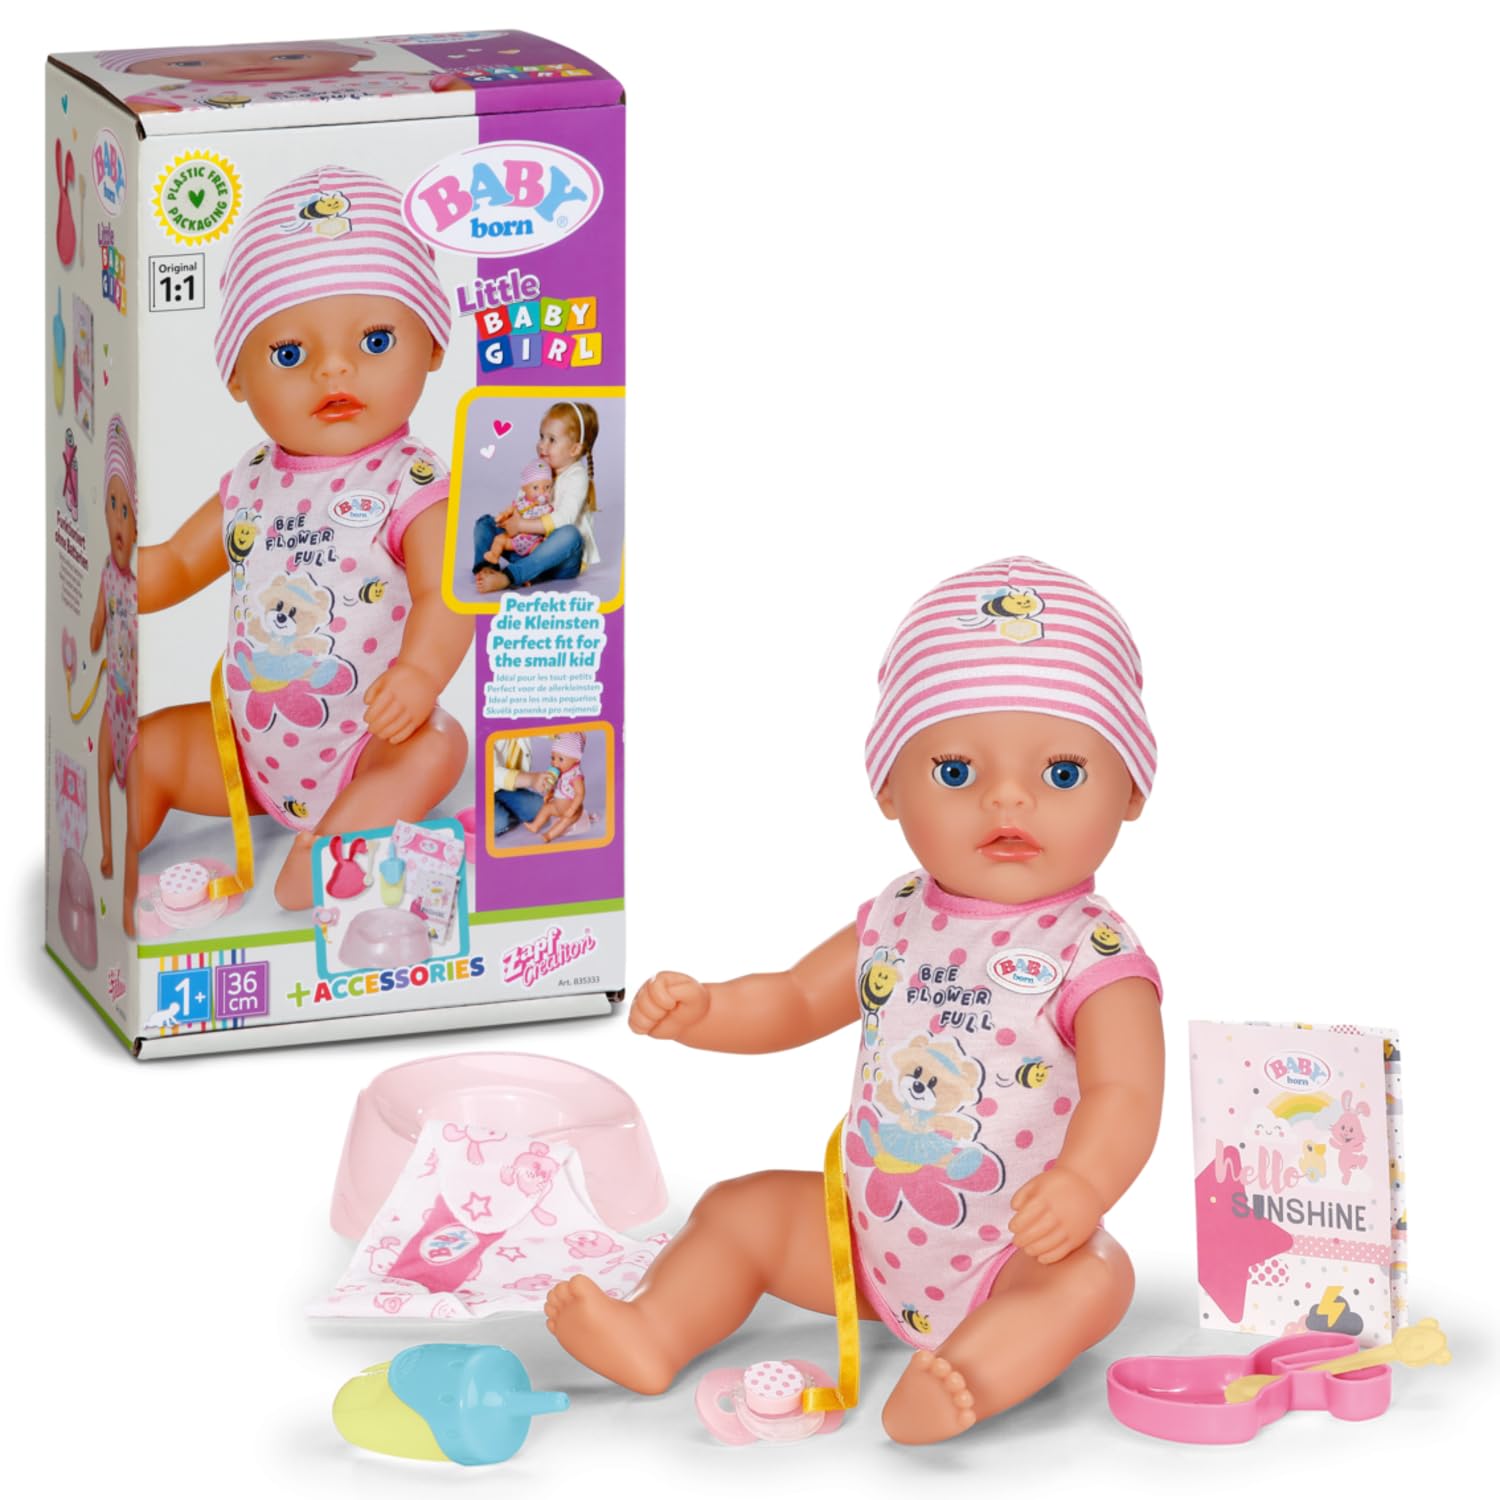 BABY Born Little Baby Girl, Babypuppe mit 7 Funktionen für Kleinkinder ab 1 Jahr, funktioniert ohne Batterie, 36 cm große Puppe, 835333 Zapf Creation